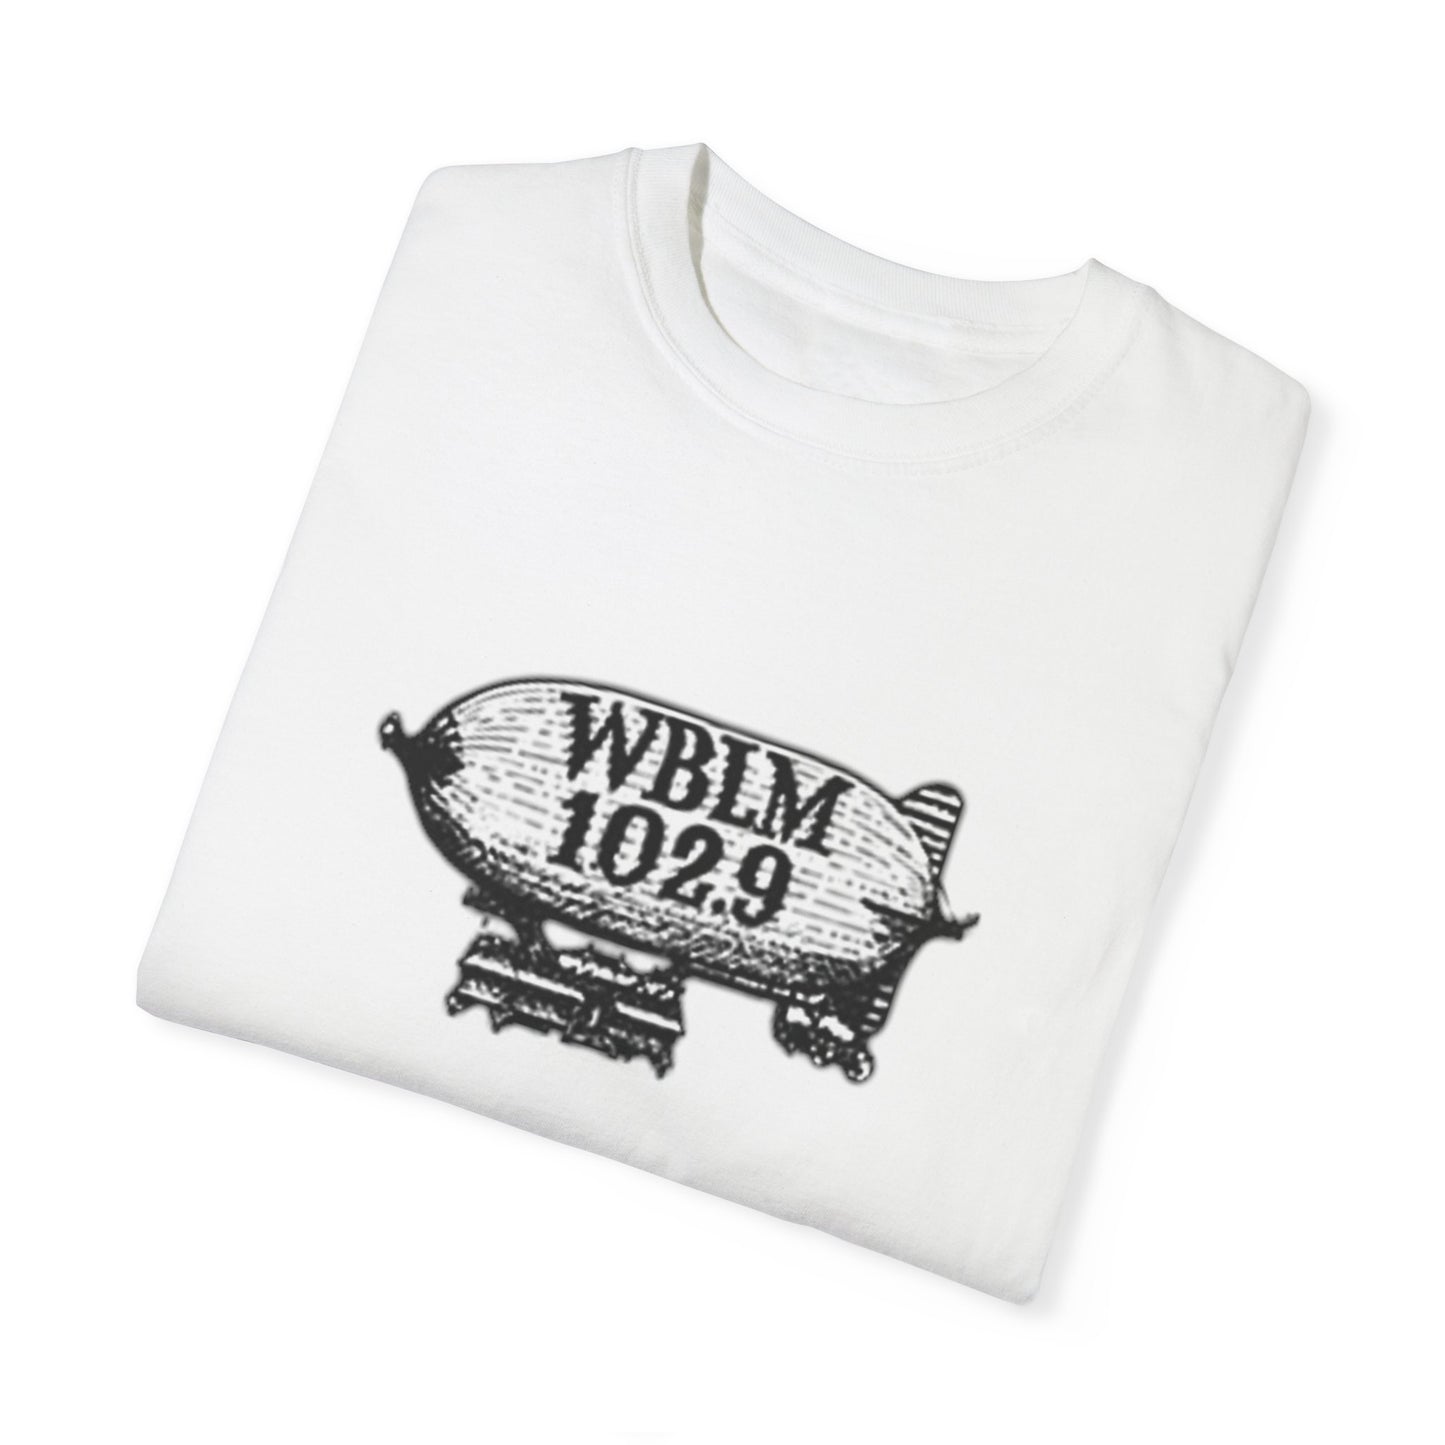 WBLM Unisex T-shirt